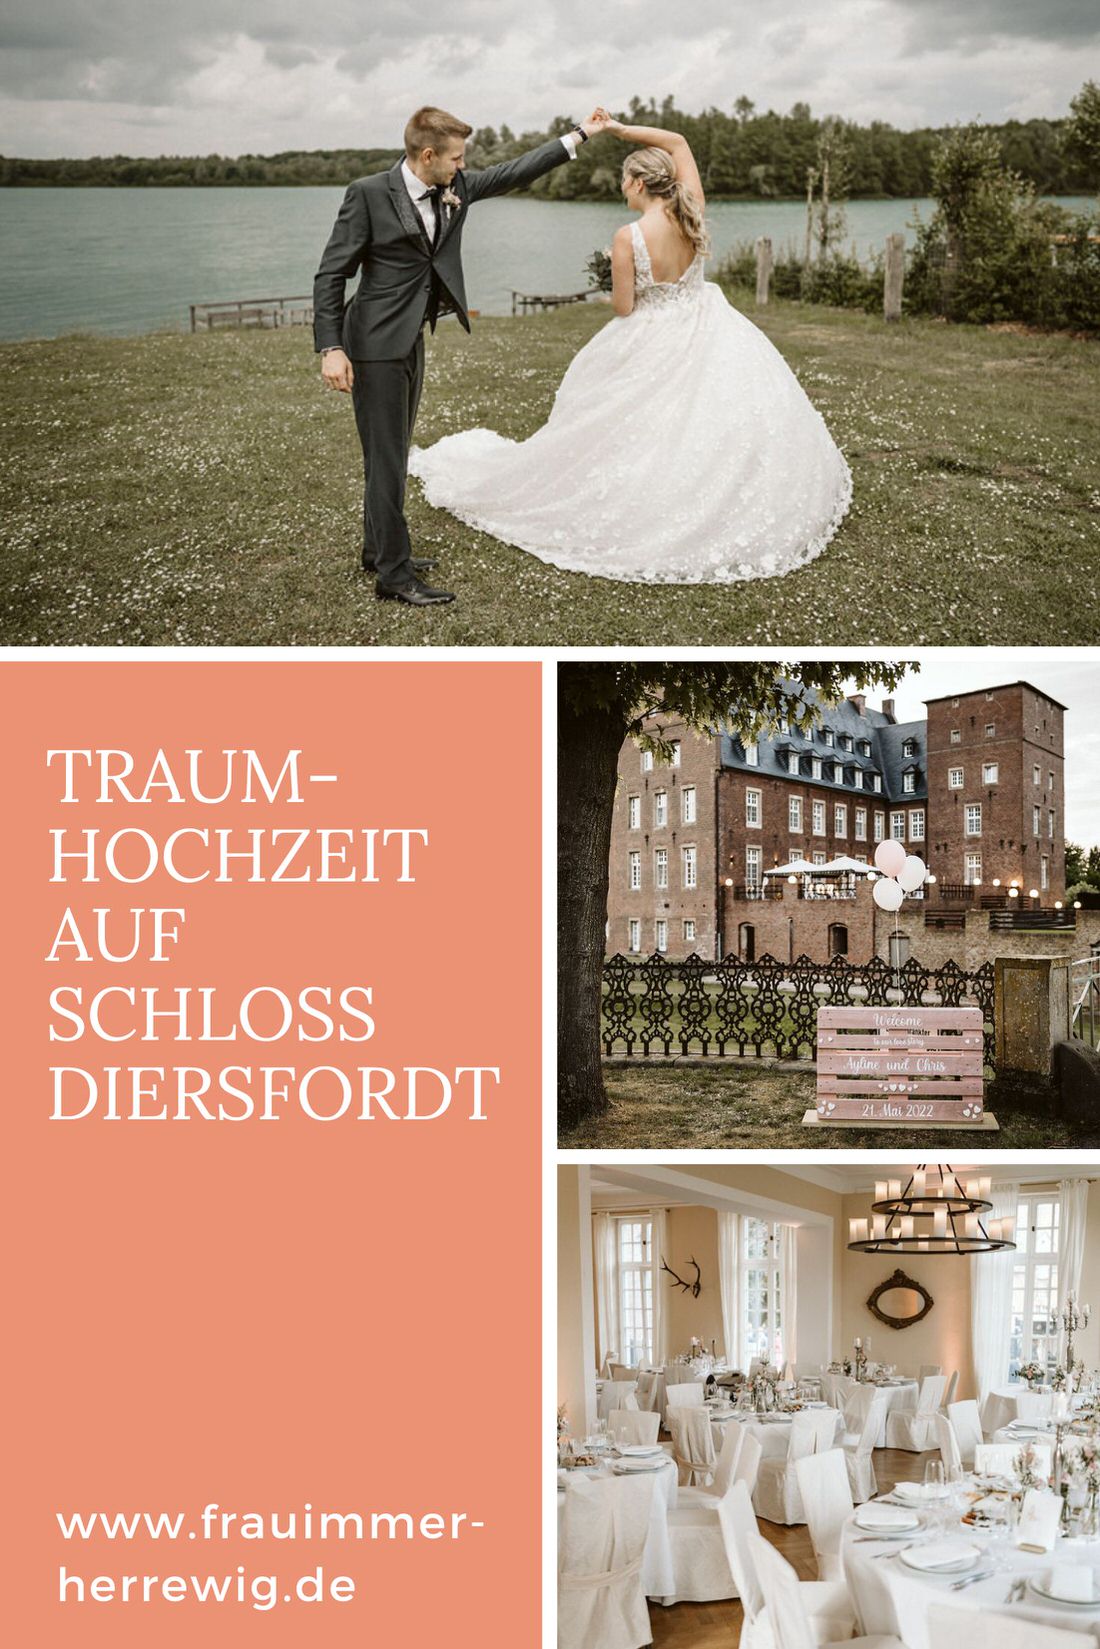 Hochzeit schloss diersfordt – gesehen bei frauimmer-herrewig.de